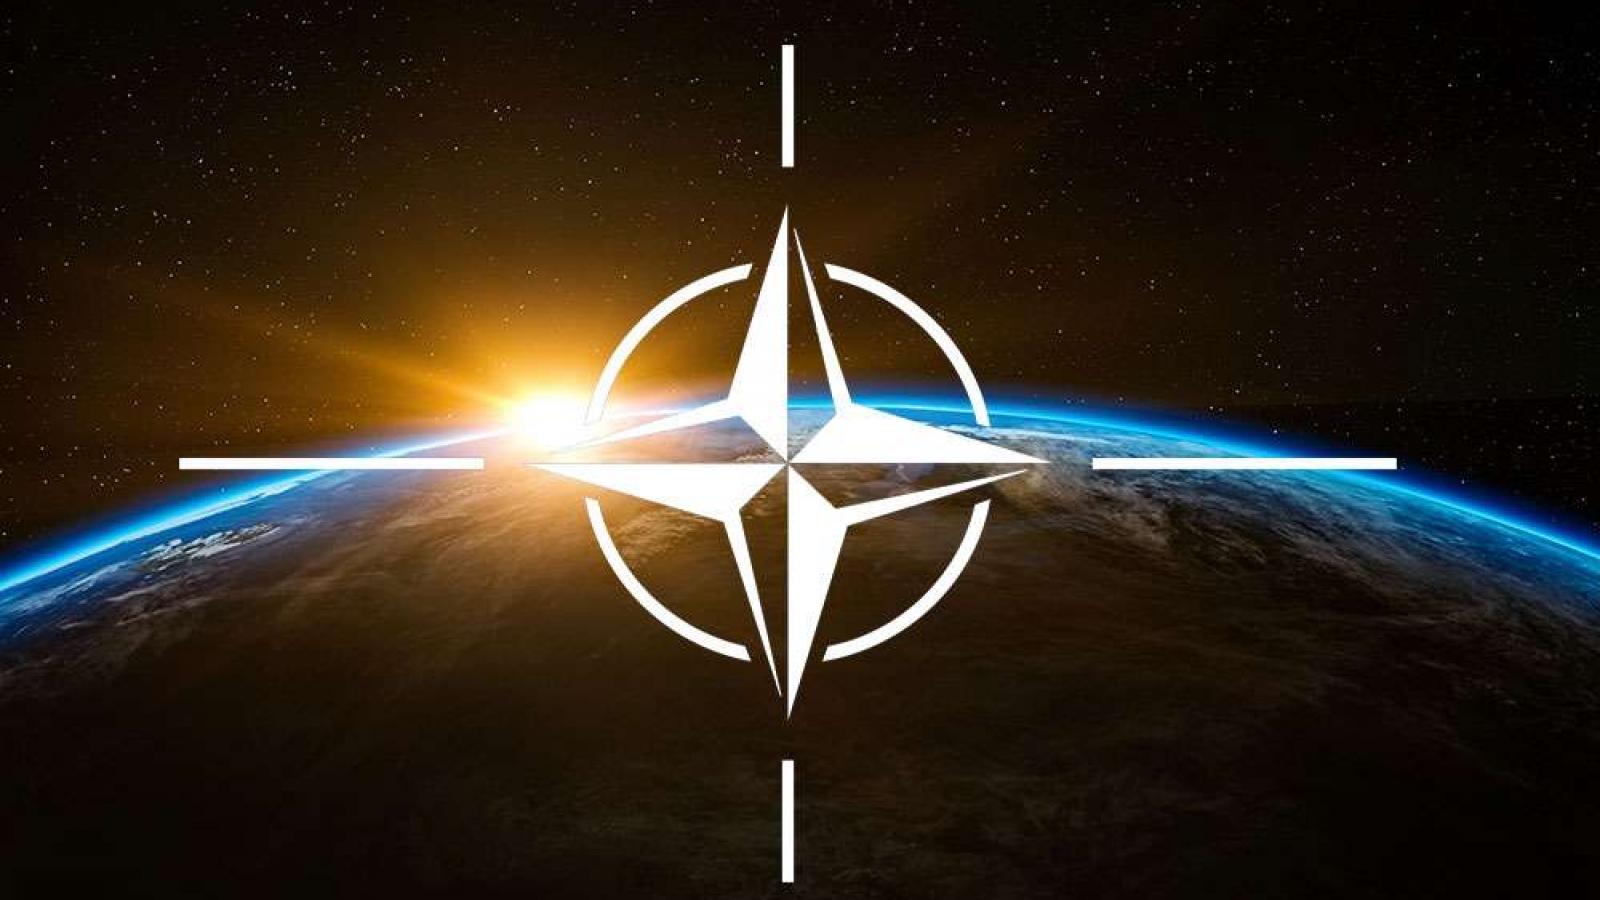 Bütün NATO Ülkeleri Güçlerini Birleştirip Tek Bir Ülke Olsaydı Ne Olurdu?